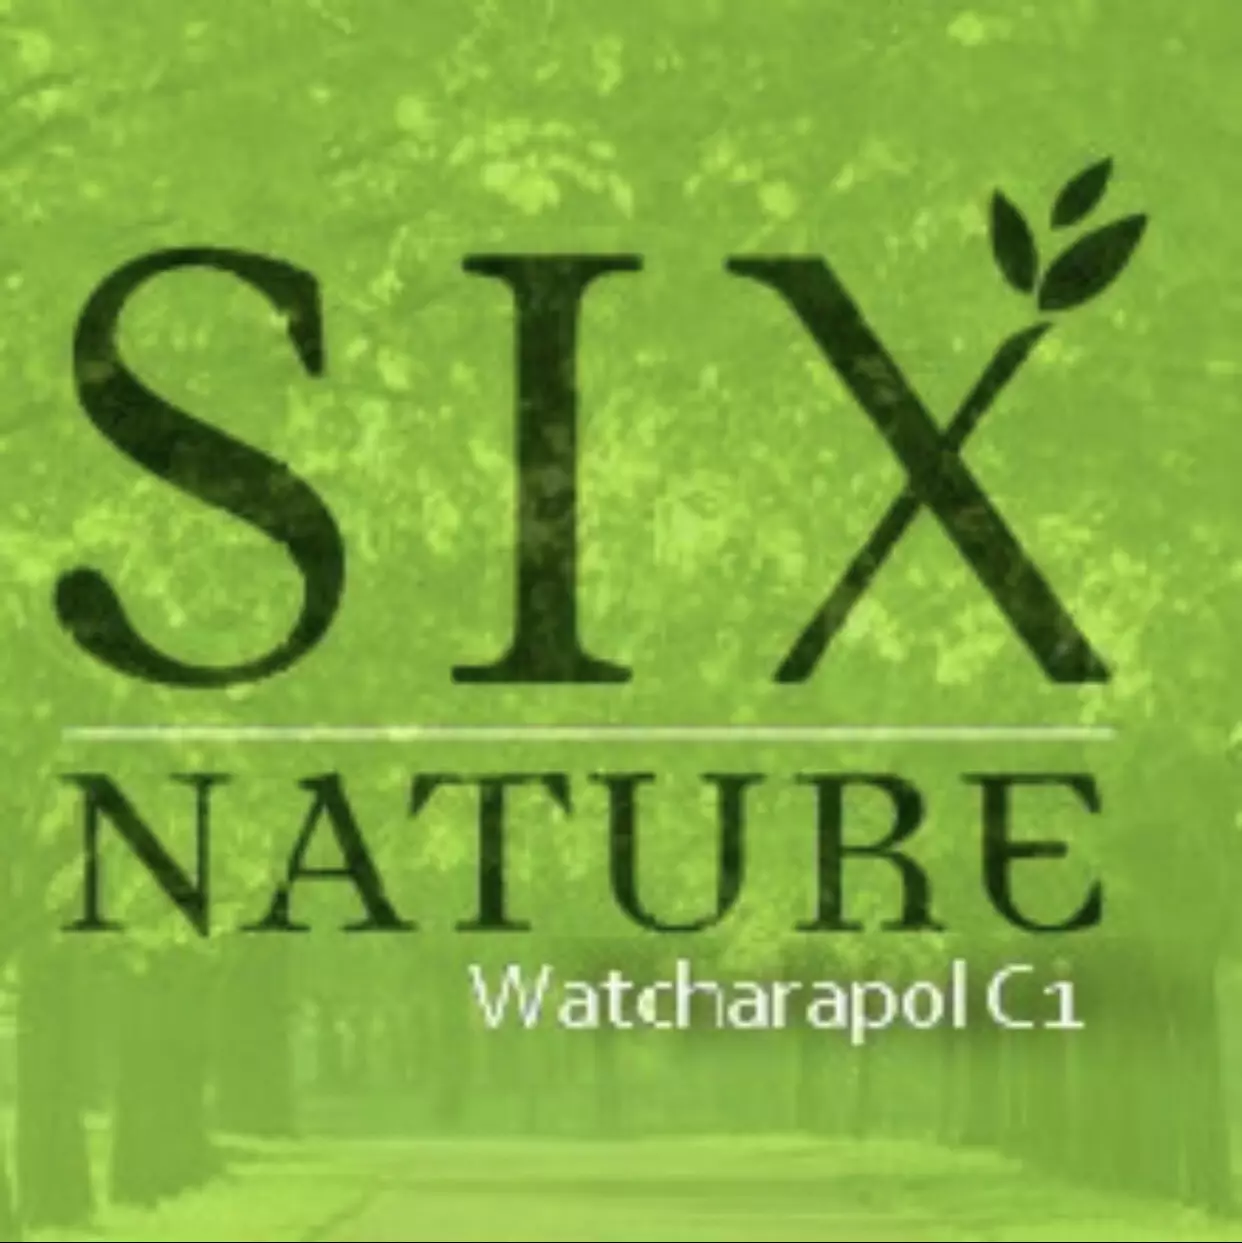 six-nature-watcharapol